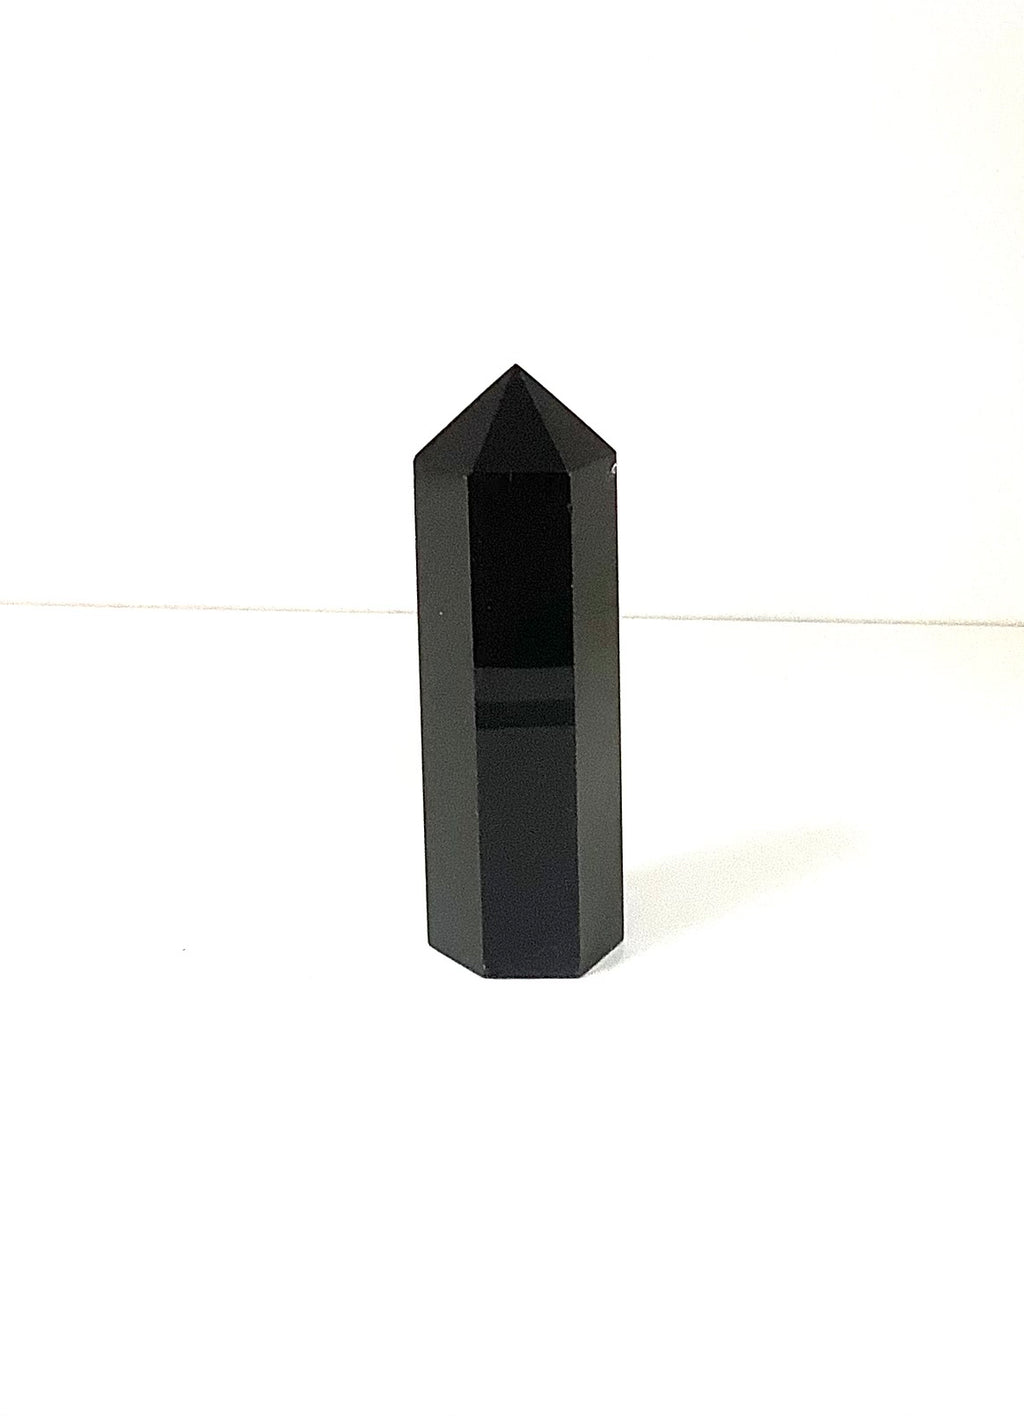 Black Obsidian Tower - Lighten Up Shop